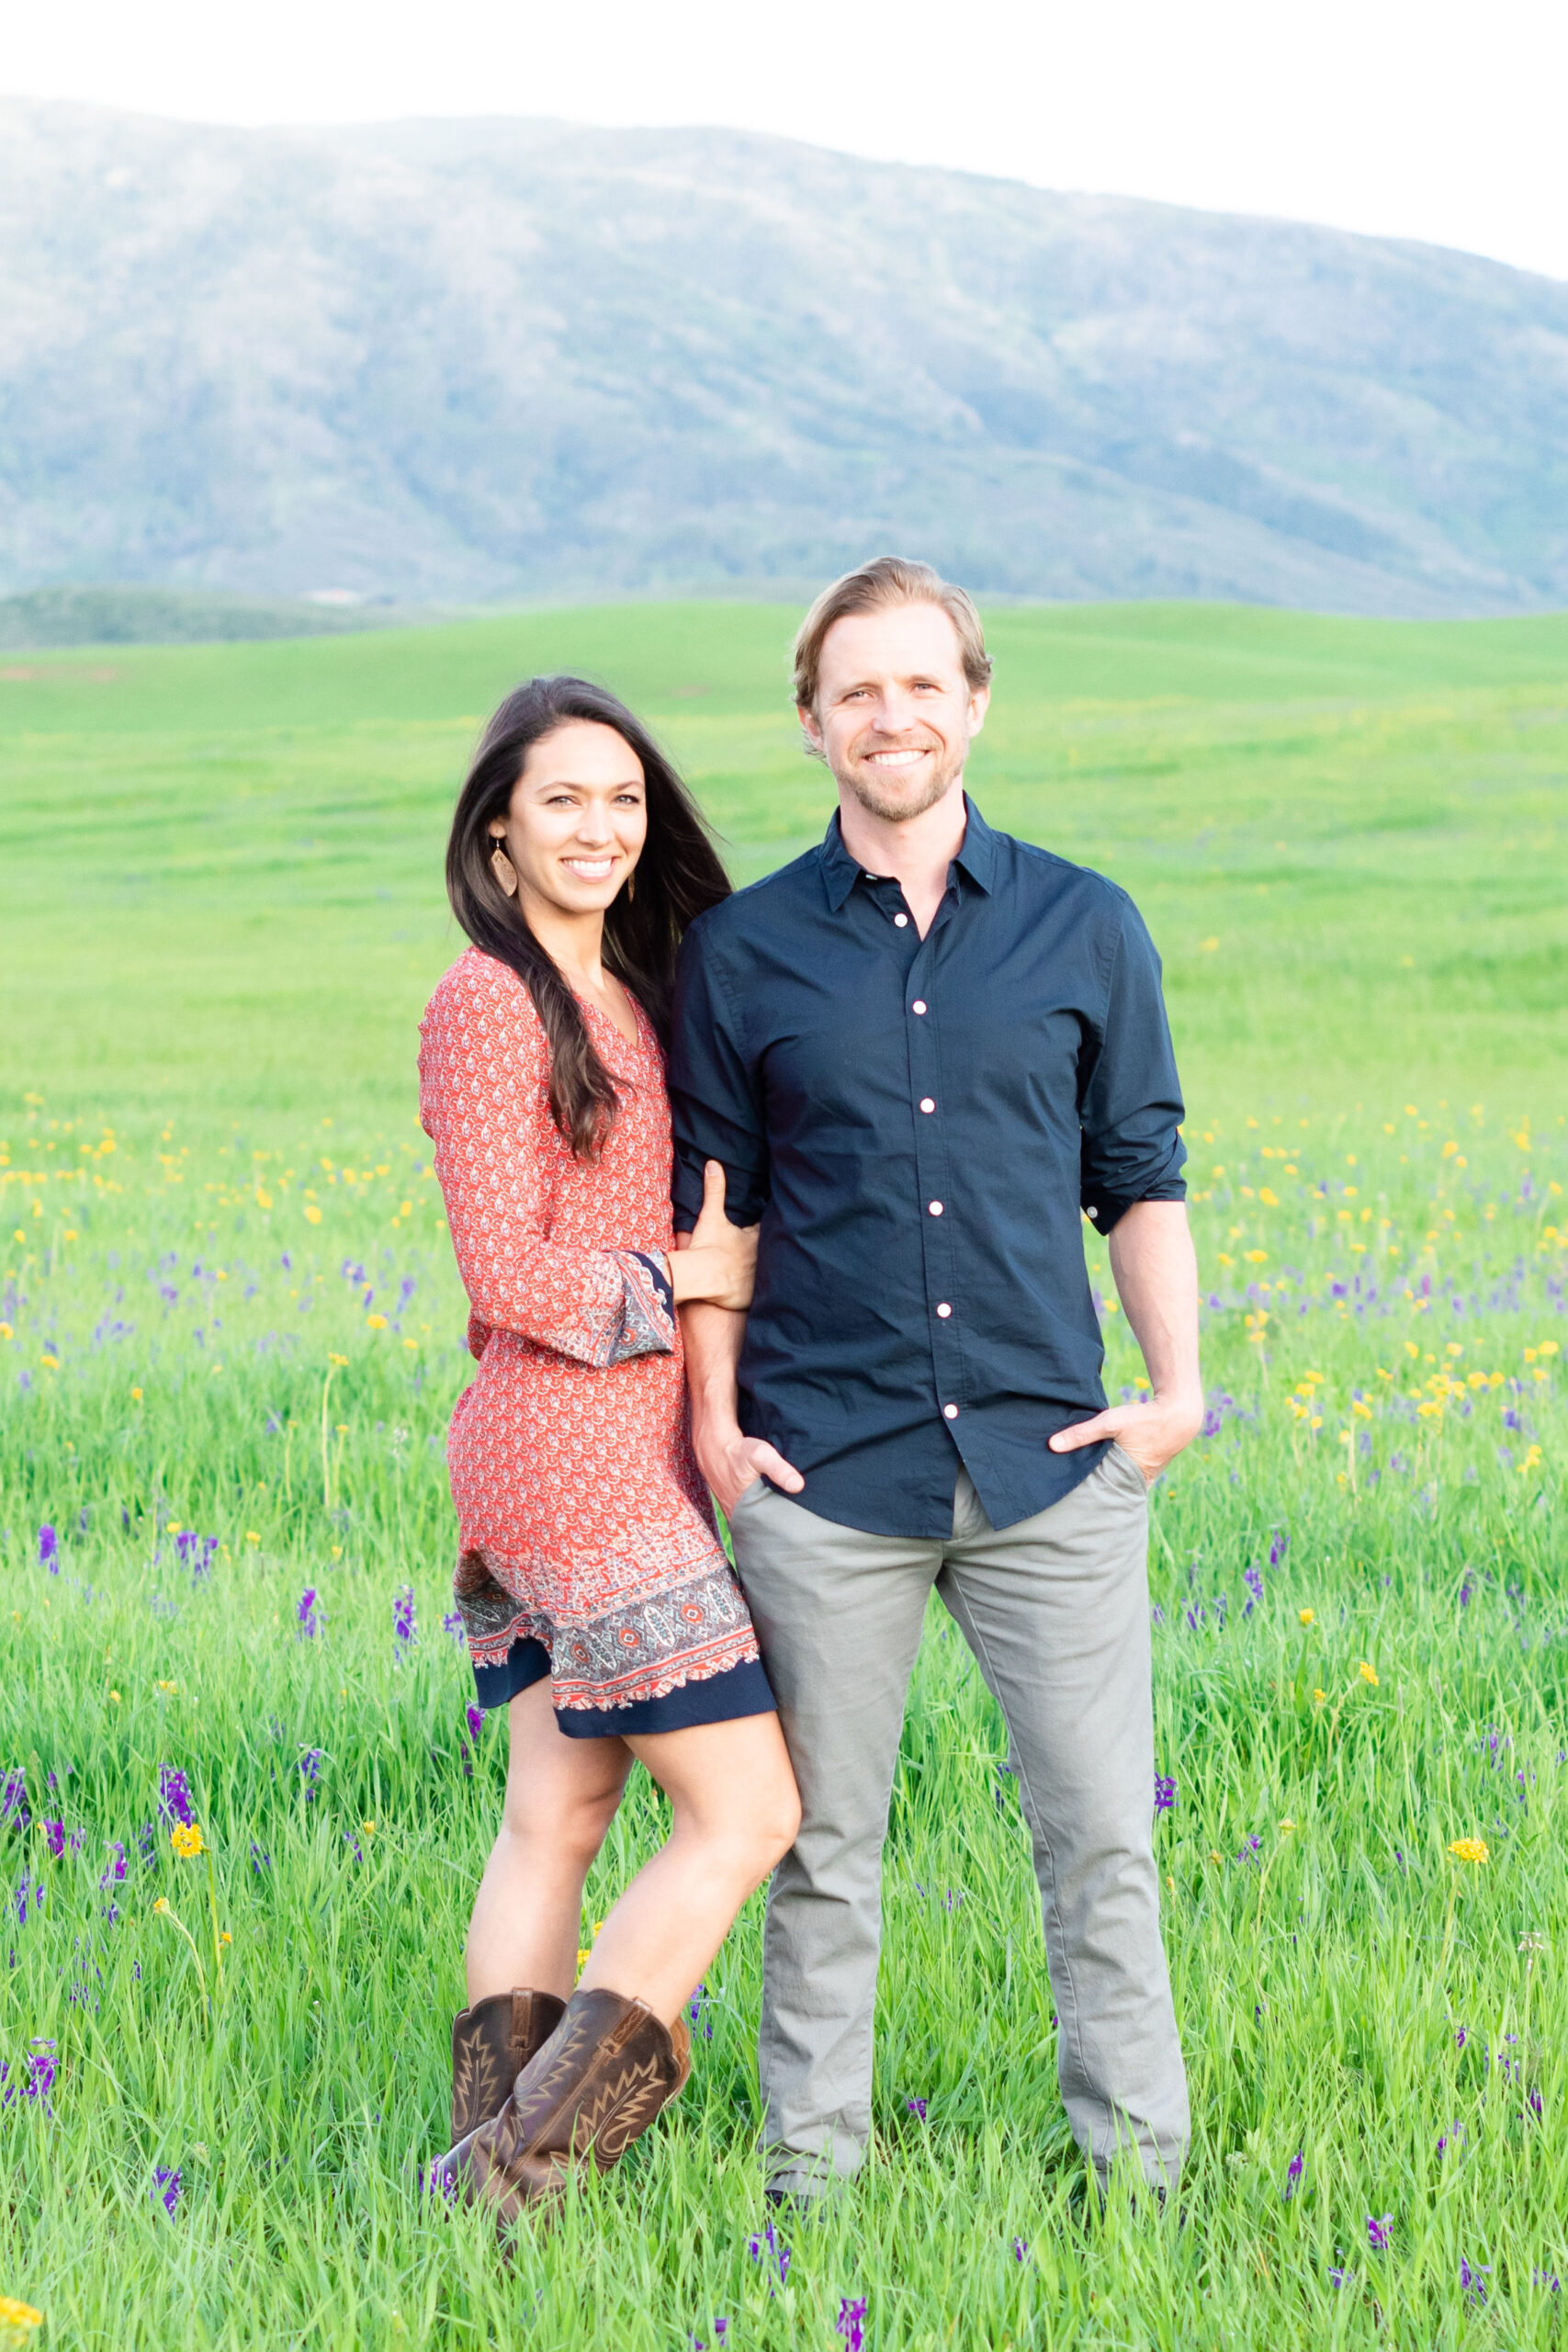 Cam and Lauren Prendergast, founders of Thread Wellness